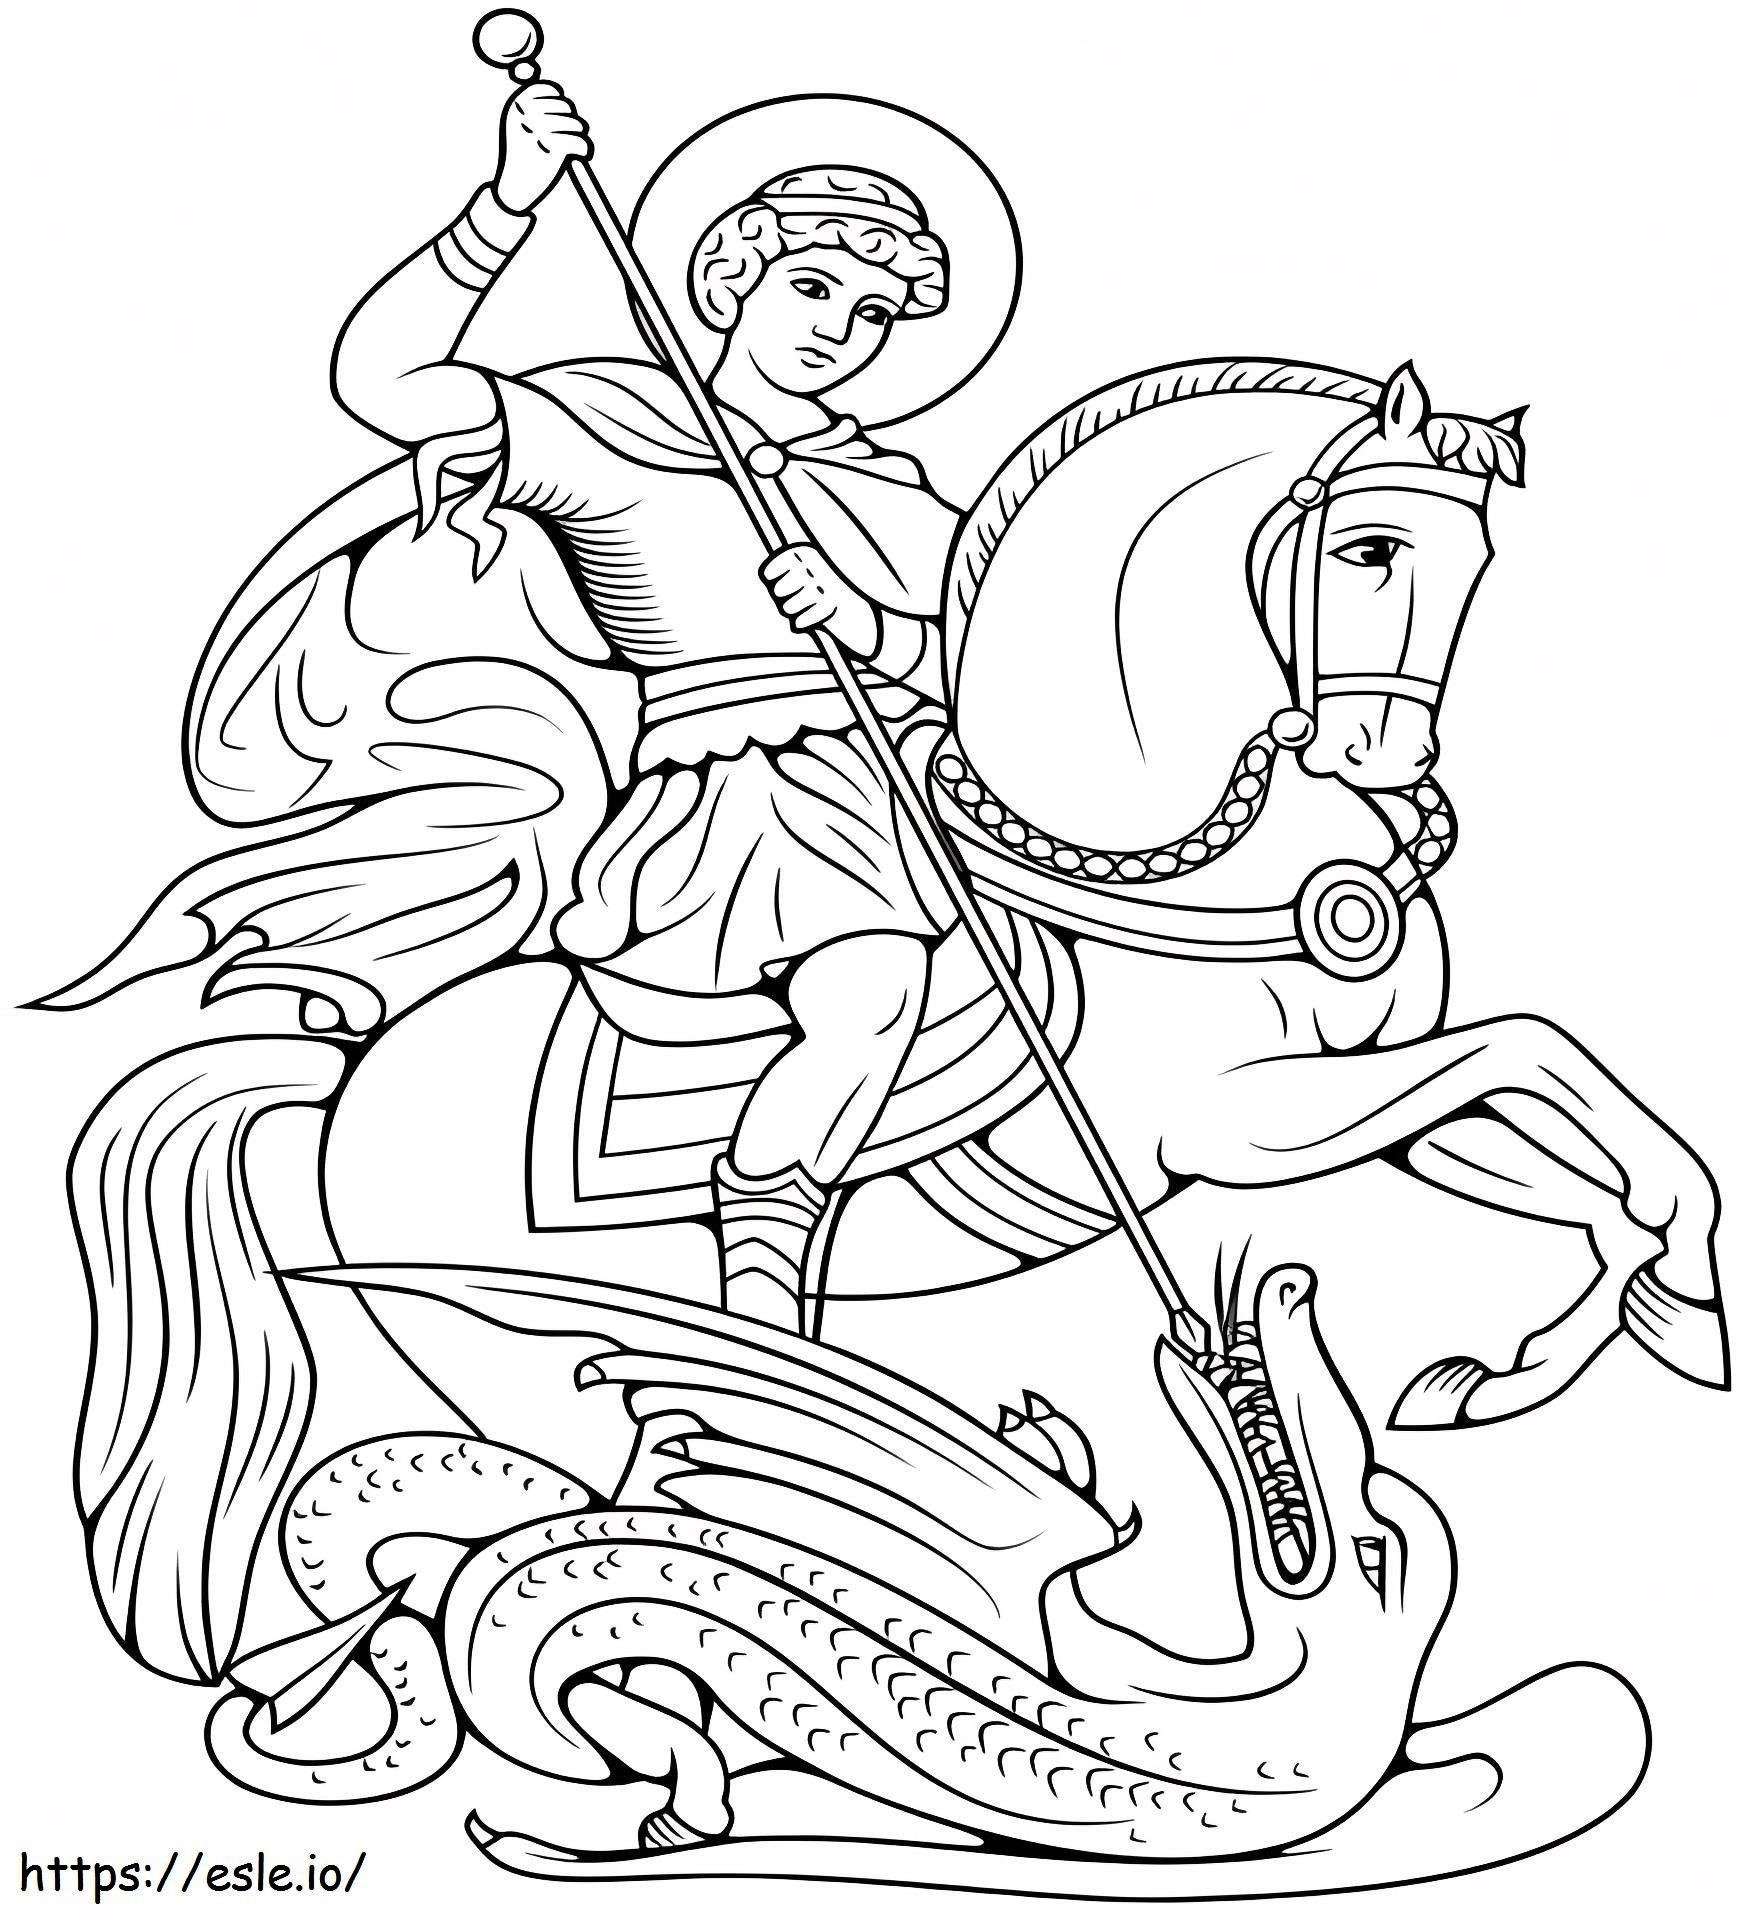 1527061736_Der Heilige Georg tötet den Drachen ausmalbilder